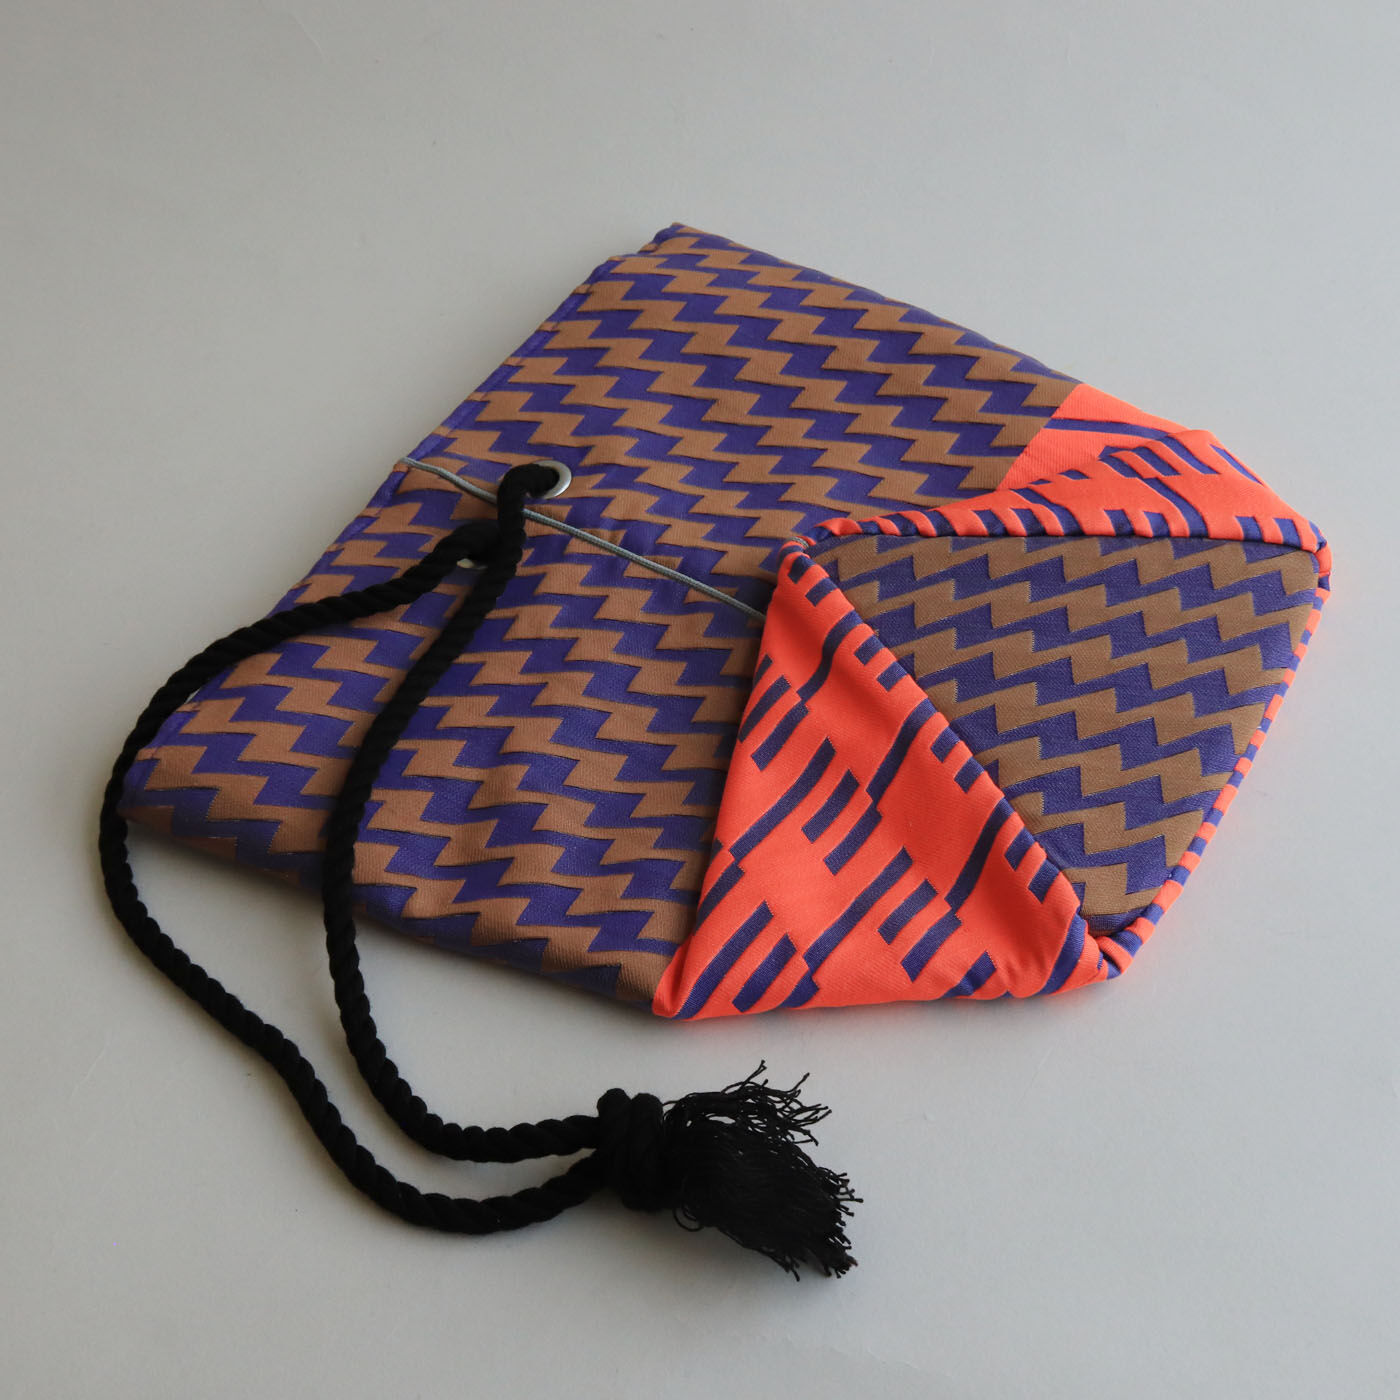 ＆Stories|テキスタイルデザイナーと作った 播州織のダズリングバッグ〈サンセット〉|ぺたんと折りたためるので、旅先にも持って行きやすく、収納にも便利。